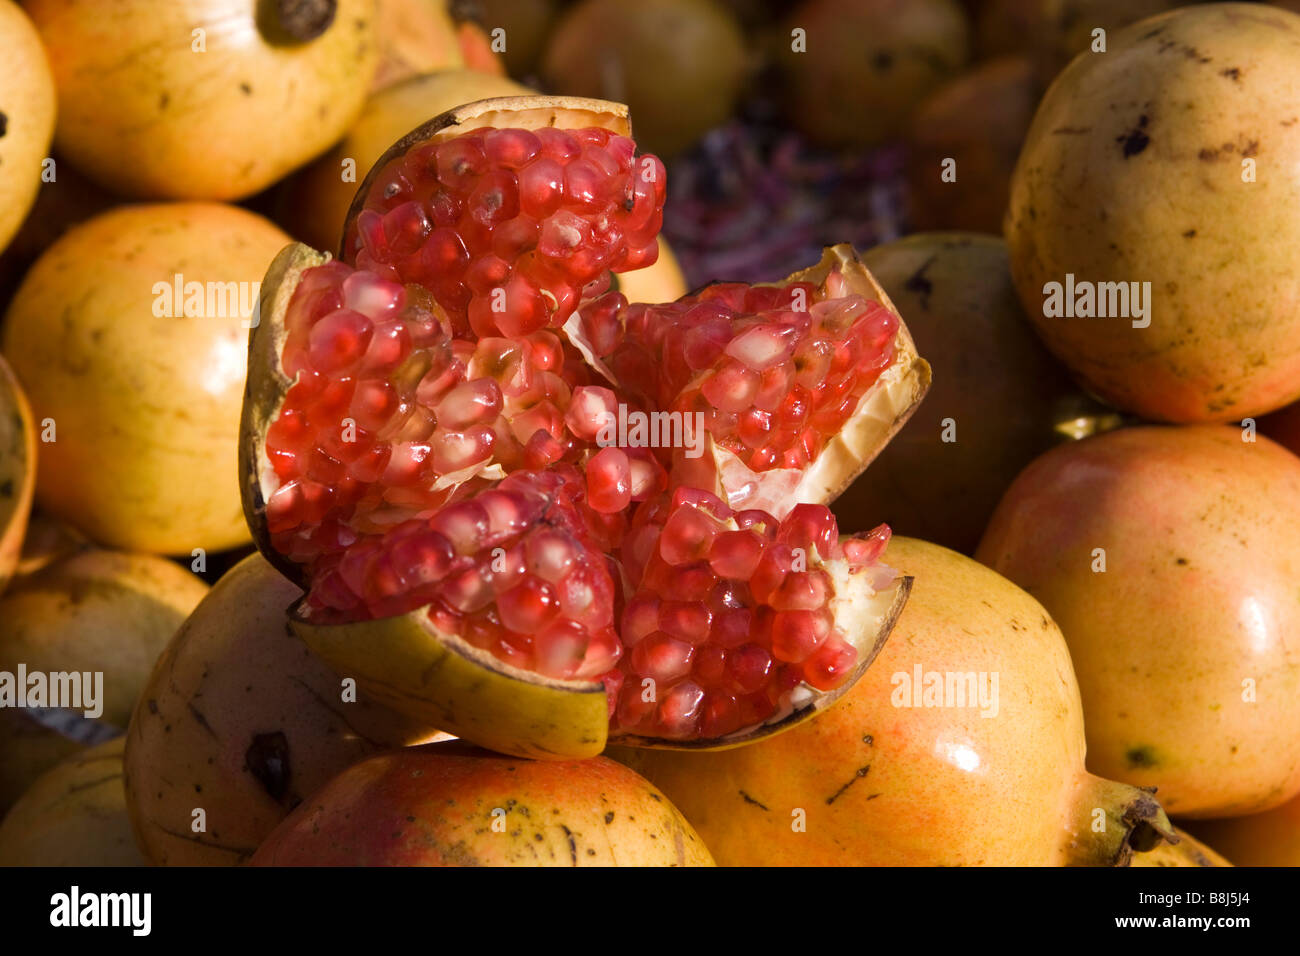 India Tamil Nadu Kumbakonam Kumbeshwara Bazaar fresh pomegranate fruit opened up Stock Photo